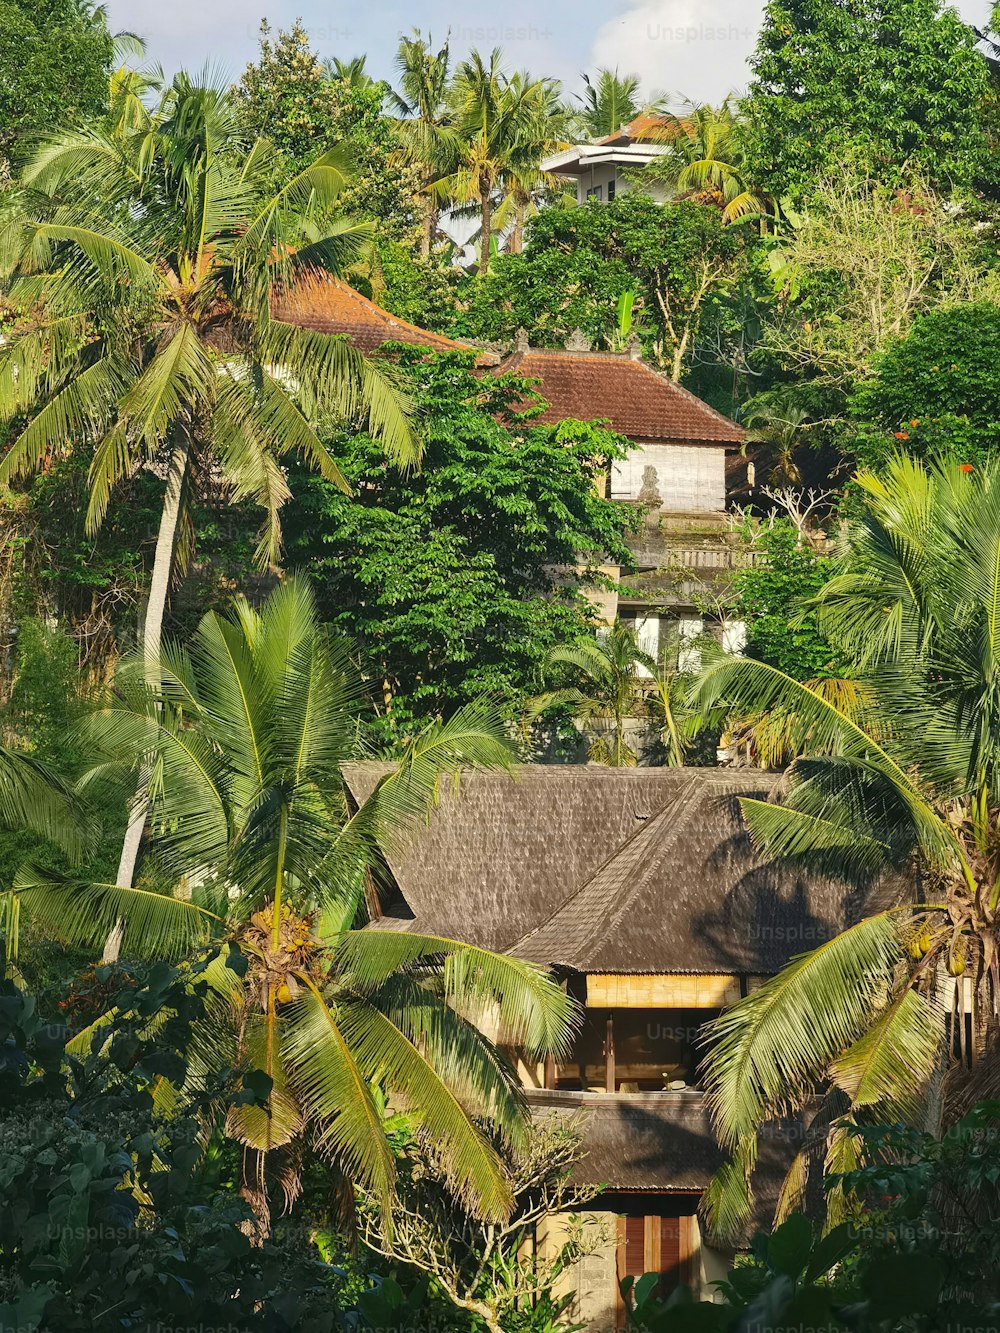 Une colline vert émeraude, luxuriante d’arbres et de feuilles de palmier abondantes, se prélassant dans la chaleur du soleil.